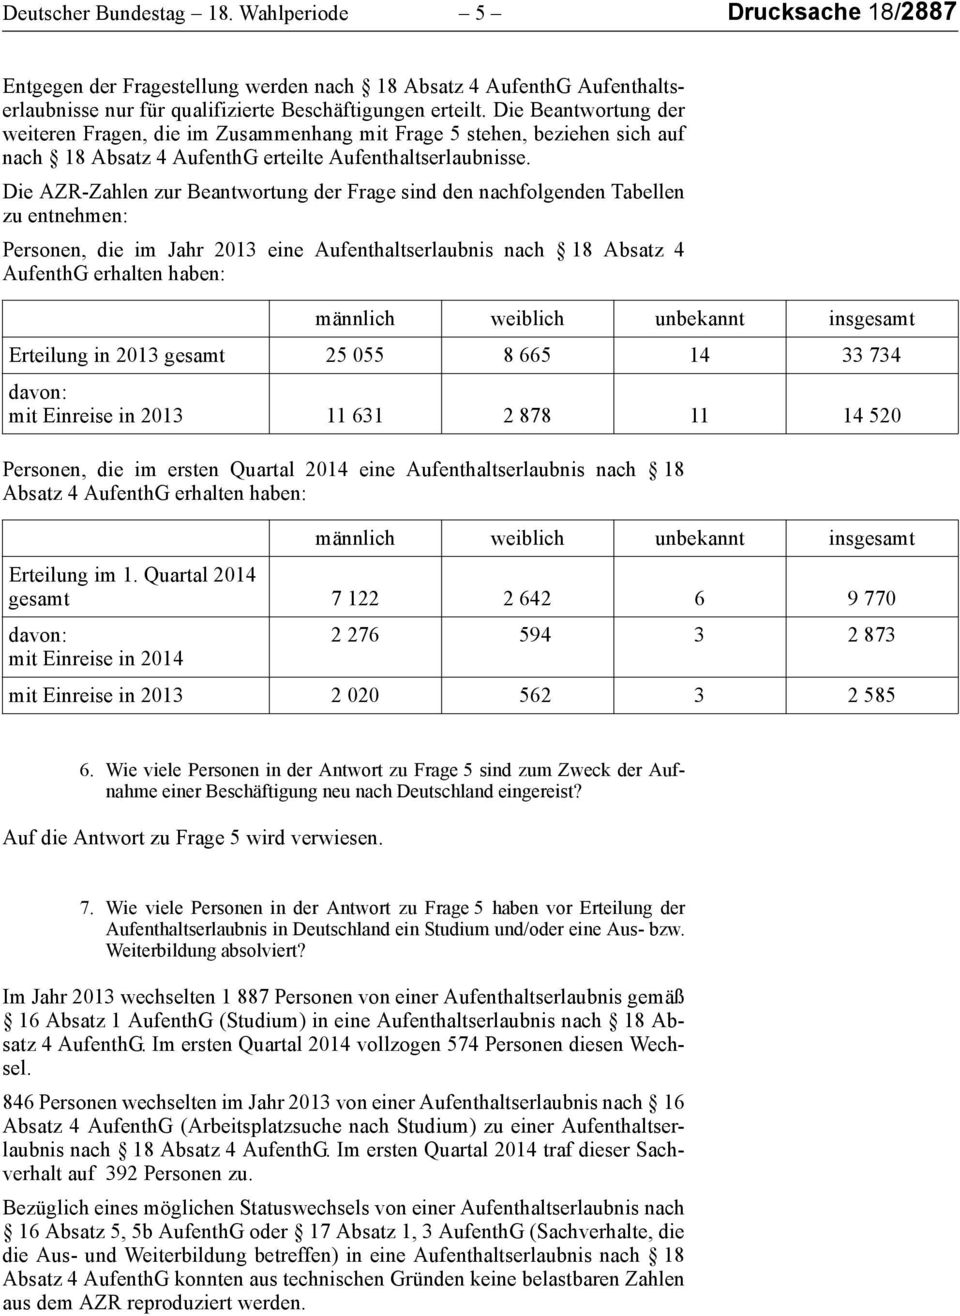 Die AZR-Zahlen zur Beantwortung der Frage sind den nachfolgenden Tabellen zu entnehmen: Personen, die im Jahr 2013 eine Aufenthaltserlaubnis nach 18 Absatz 4 AufenthG erhalten haben: Erteilung in